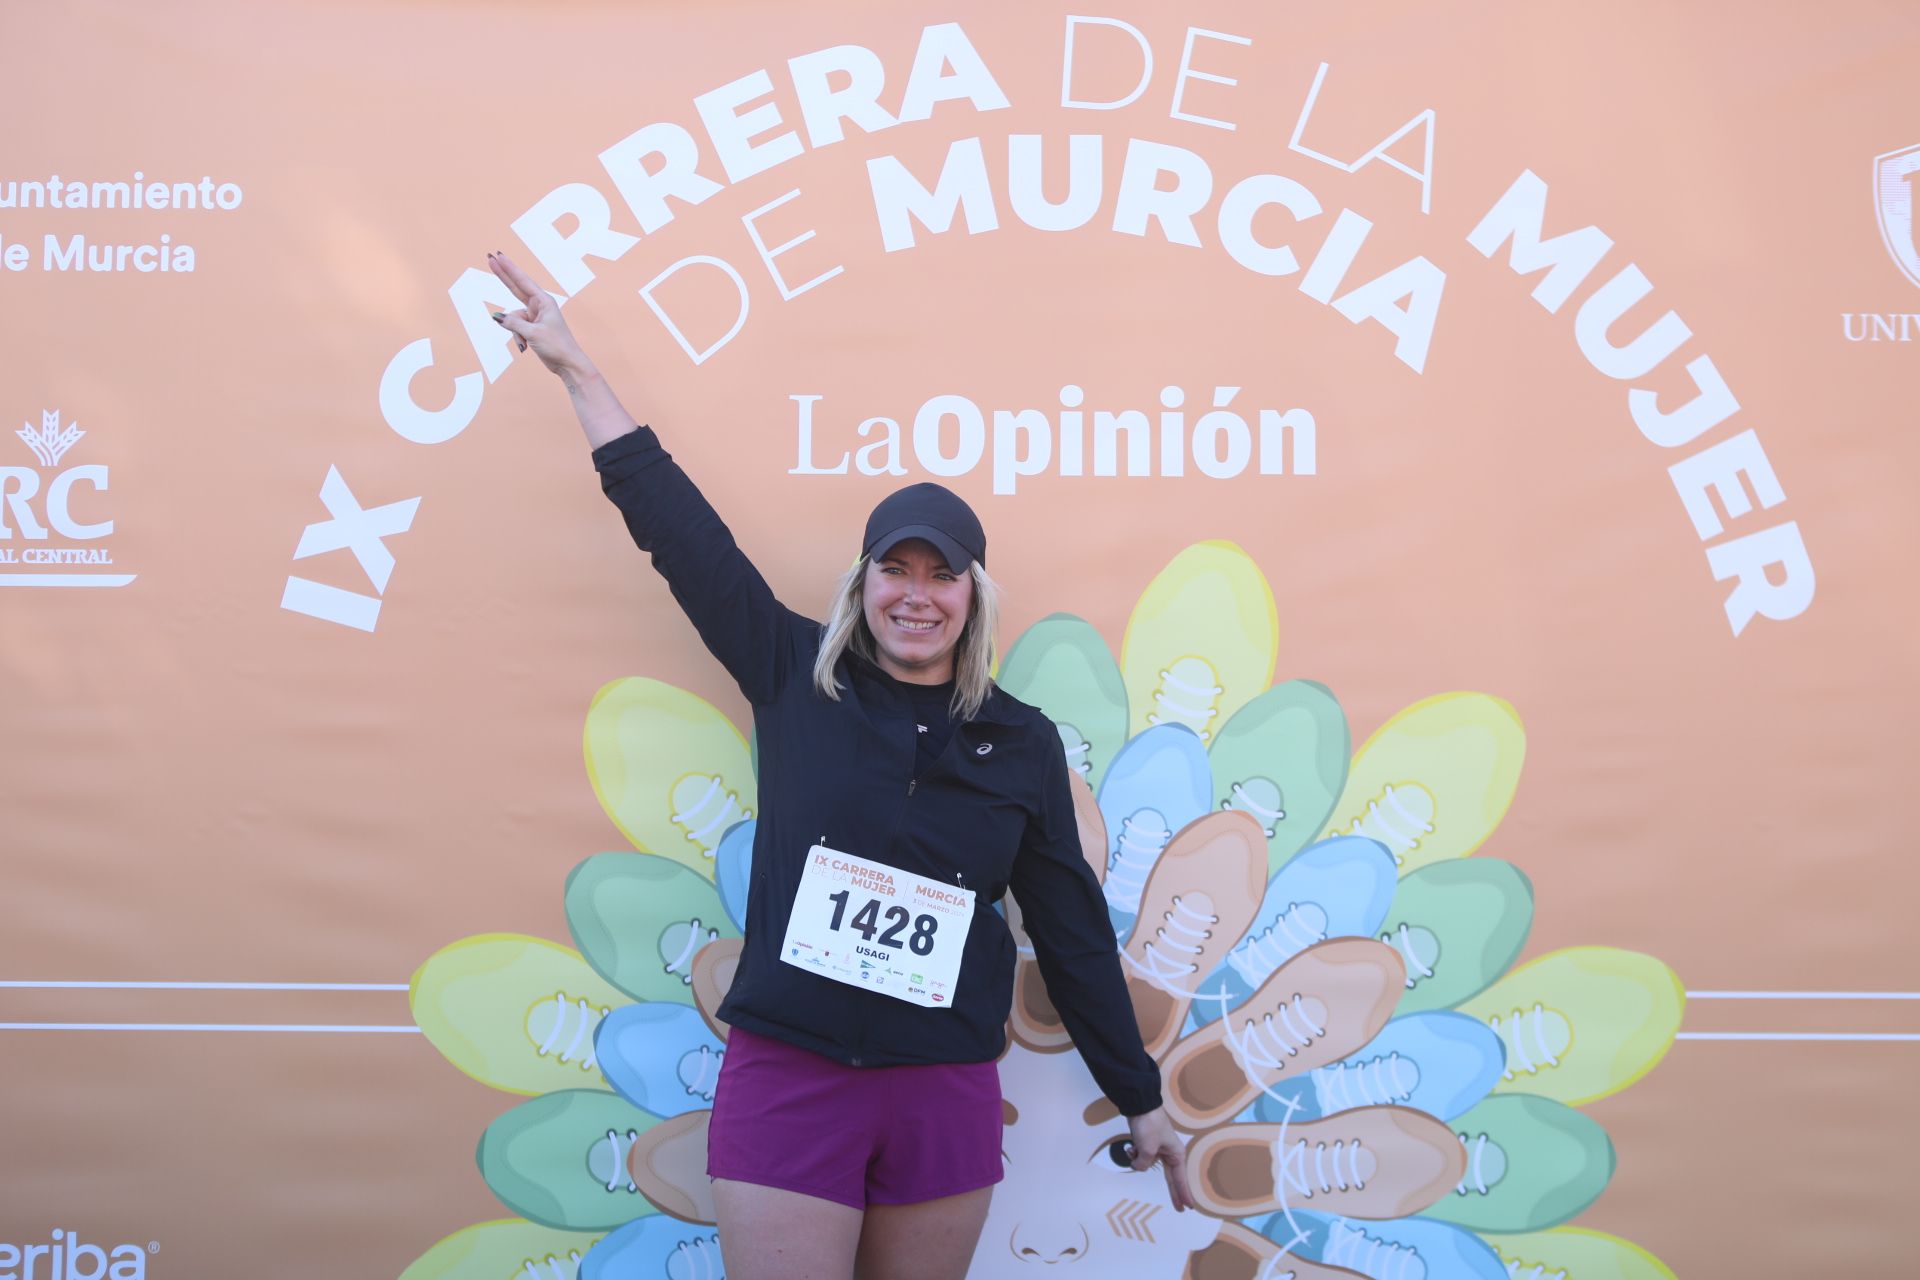 Las participantes posan en el photocall tras finalizar la Carrera de la mujer de Murcia